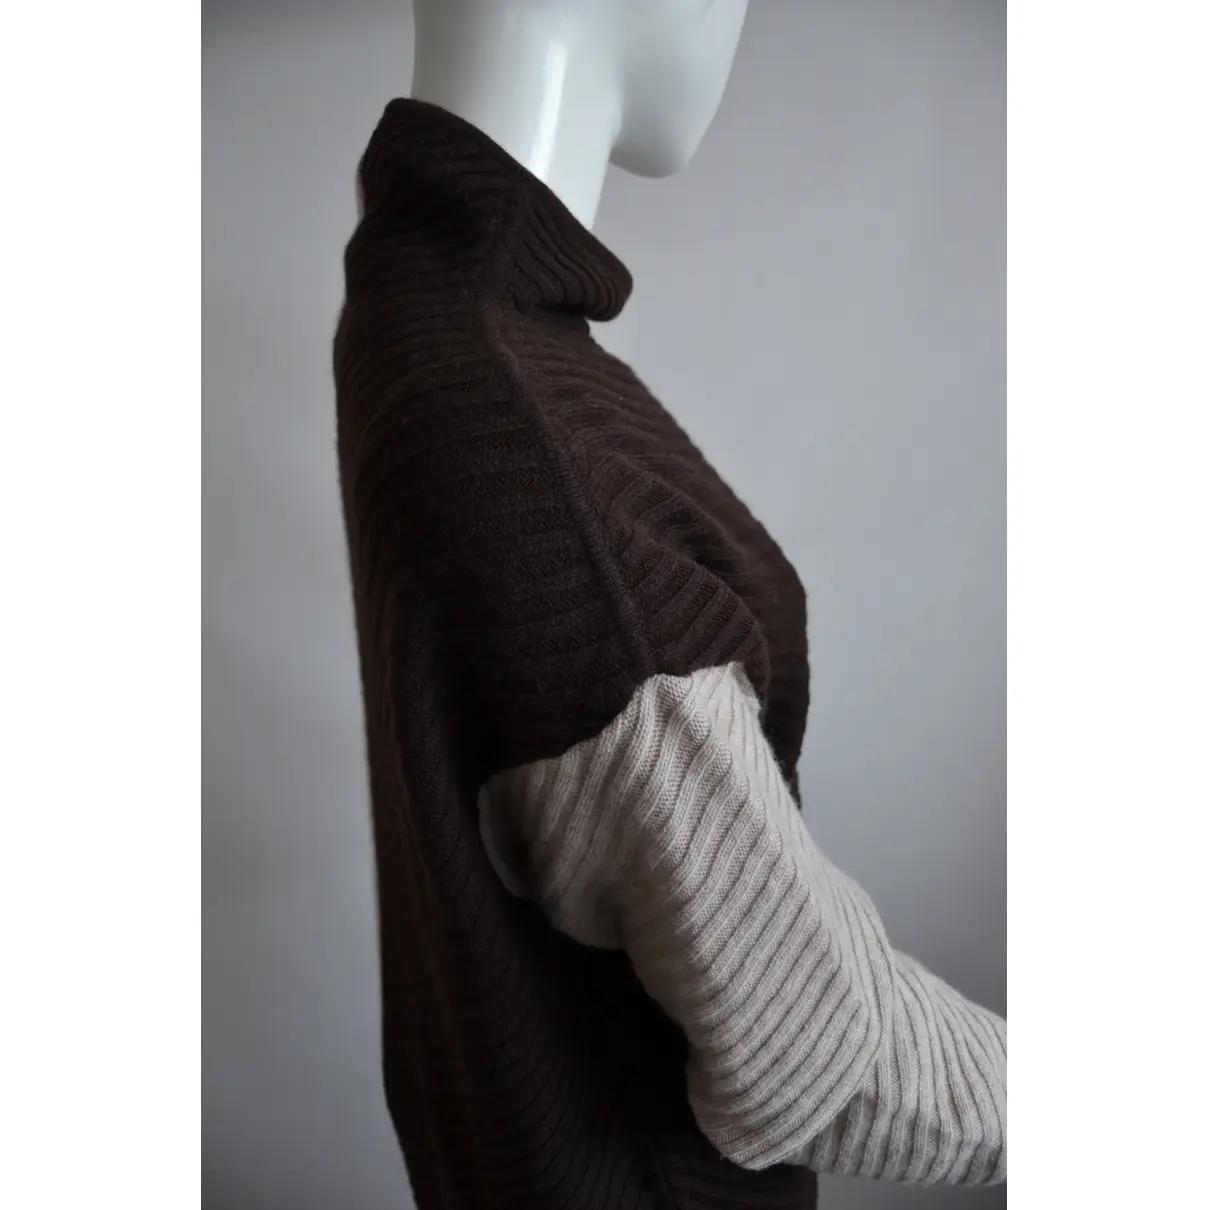 Buy Fendi Wool jumper online - Vintage